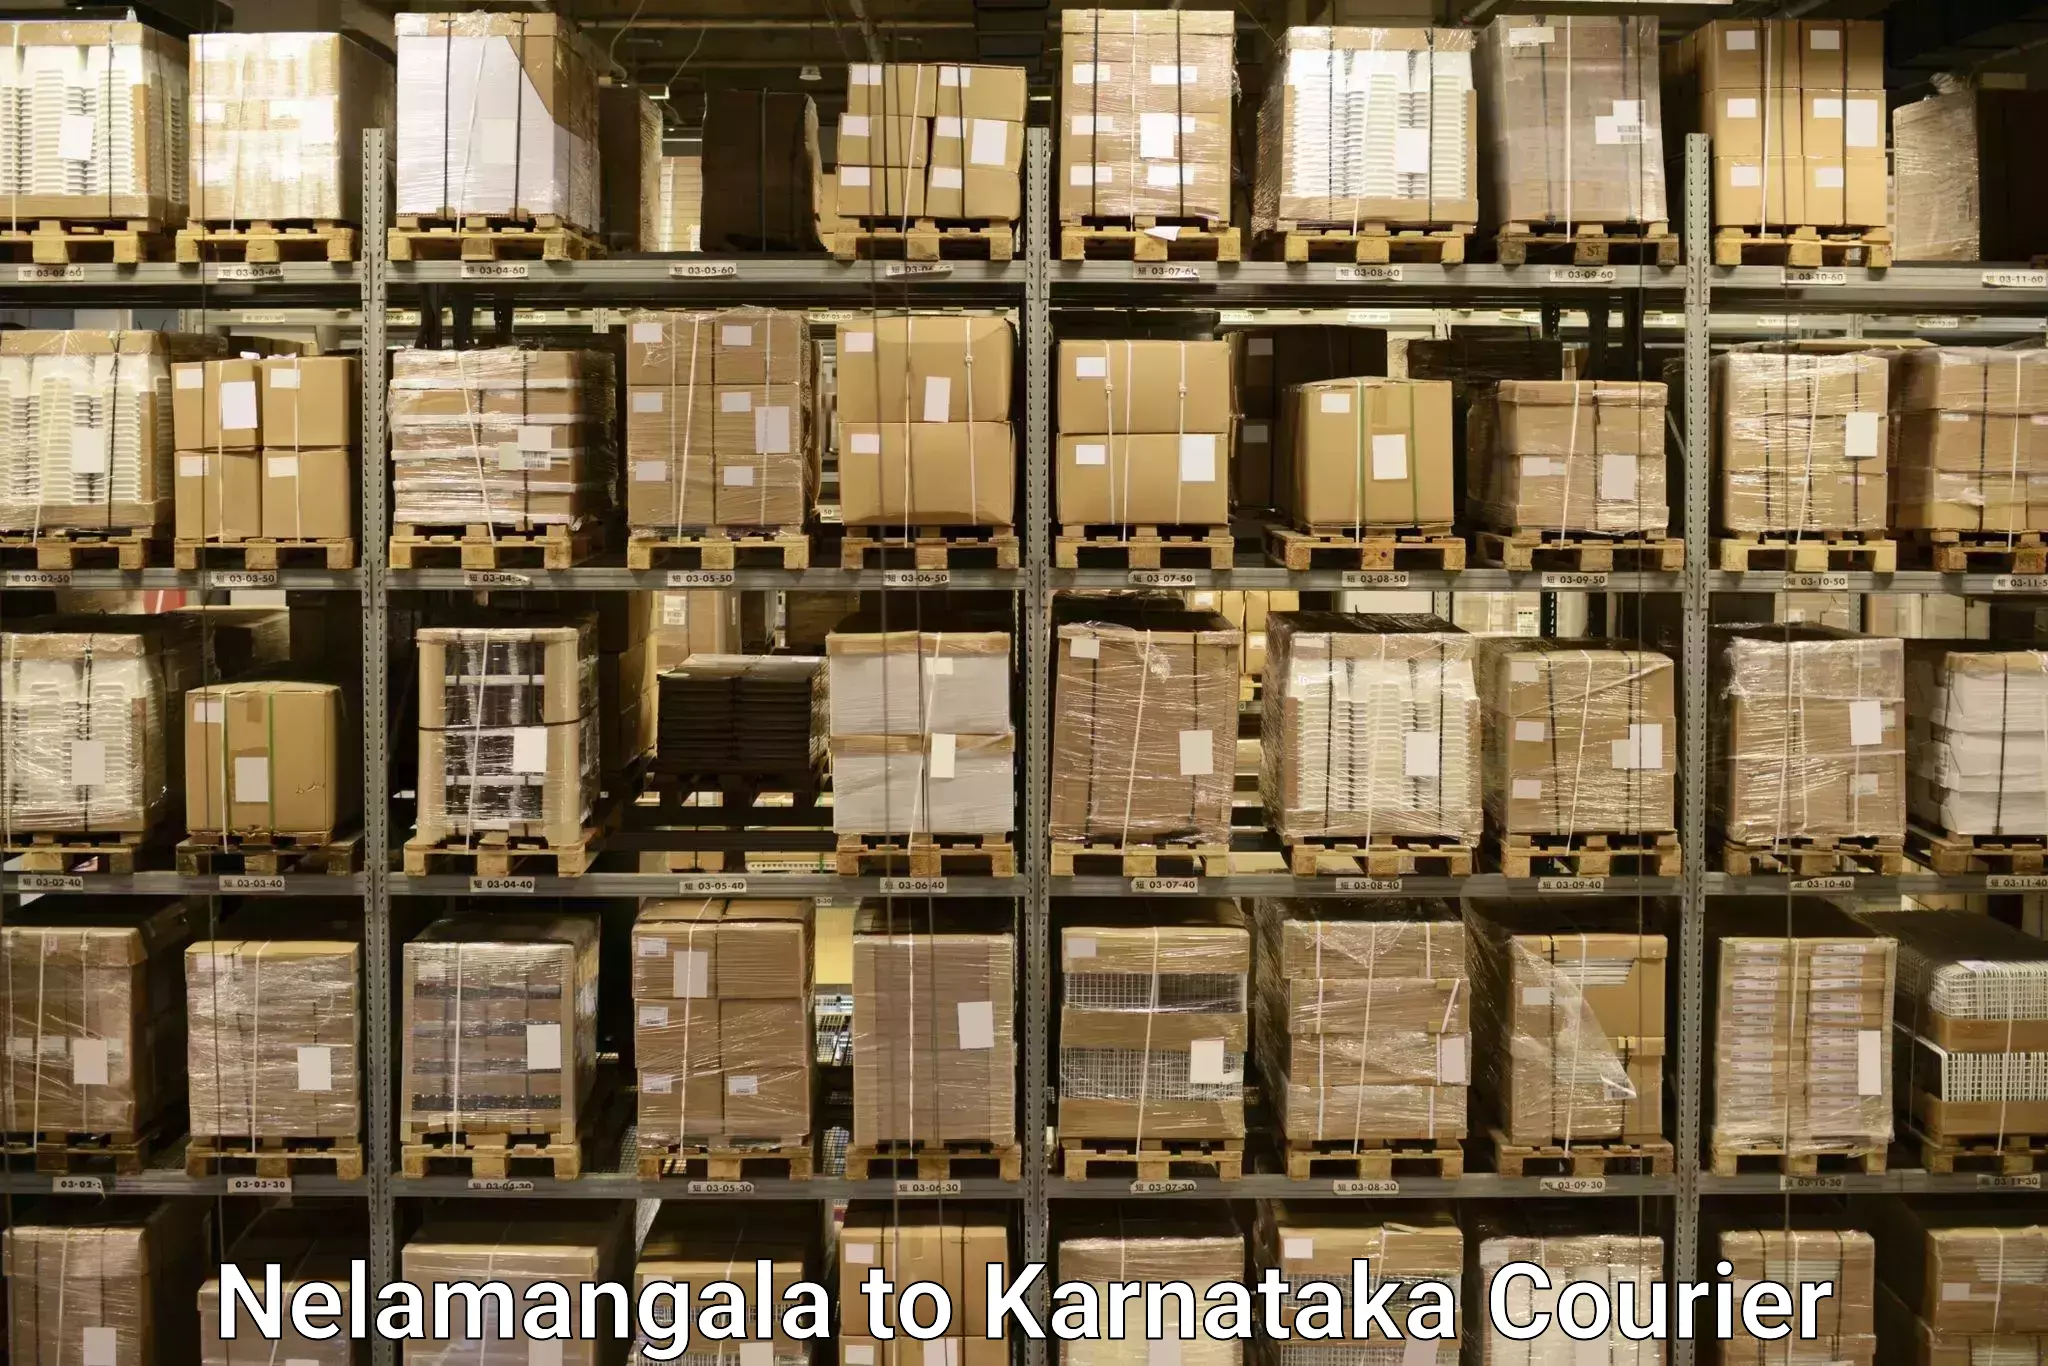 Baggage transport management Nelamangala to Karnataka